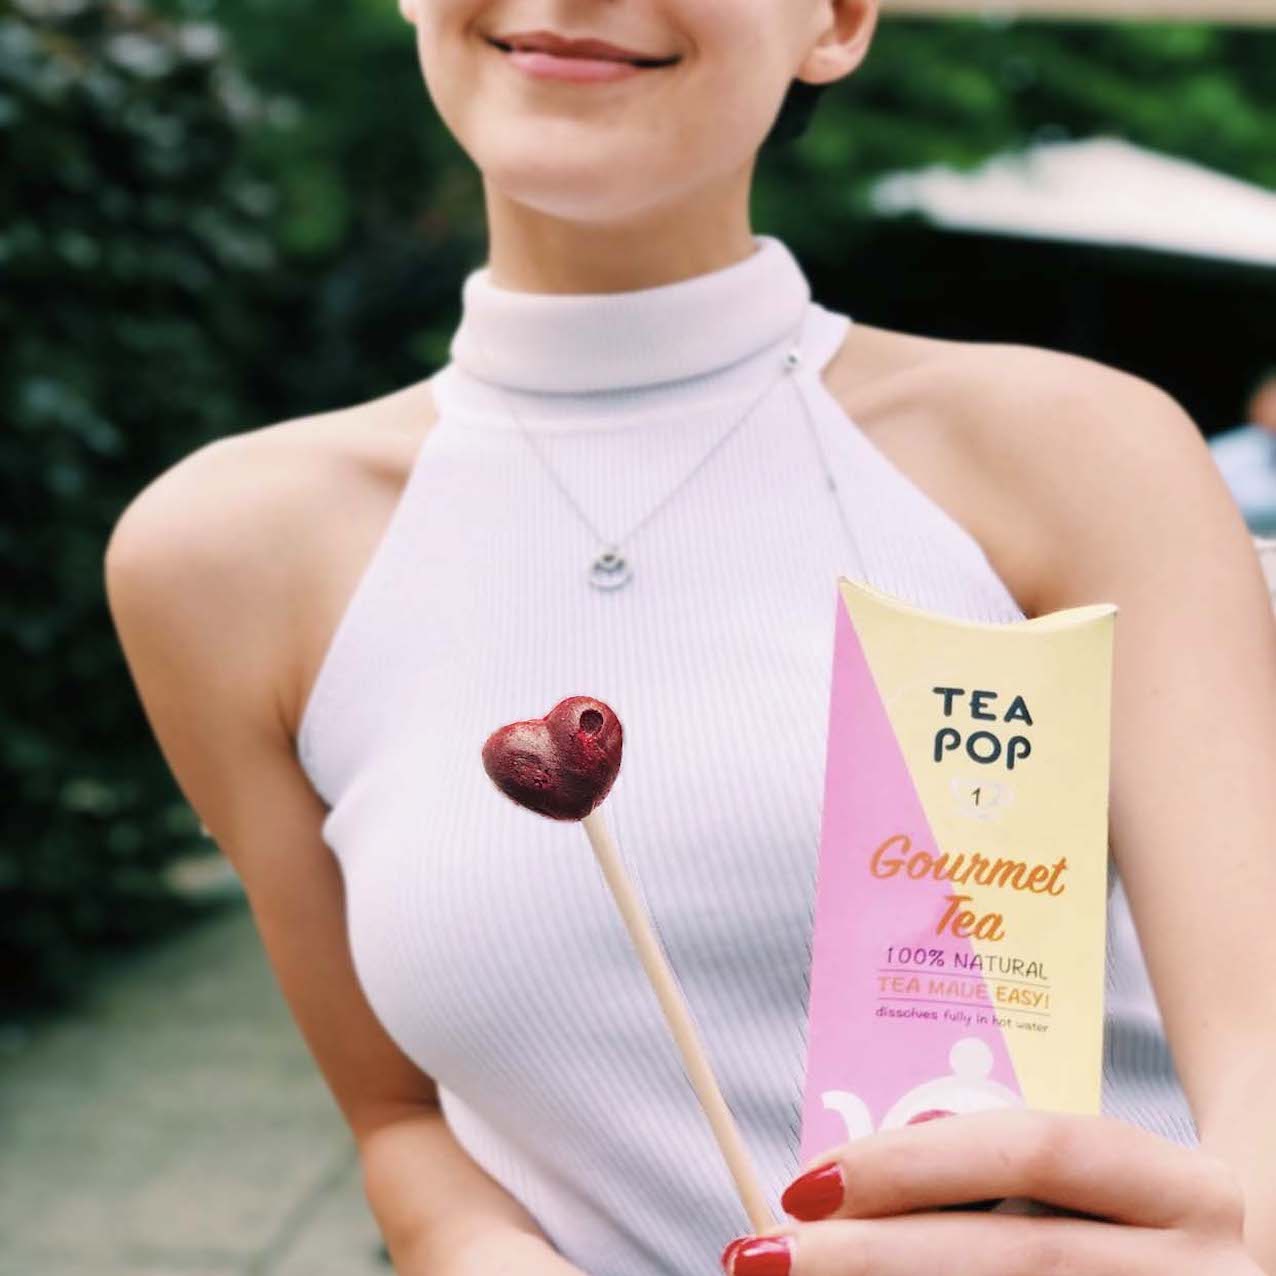 Tea-Pop Sampler Box, Spaßige Art, köstlichen Gourmet-Tee am Stiel zu genießen, 10 Mischungen zum Probieren